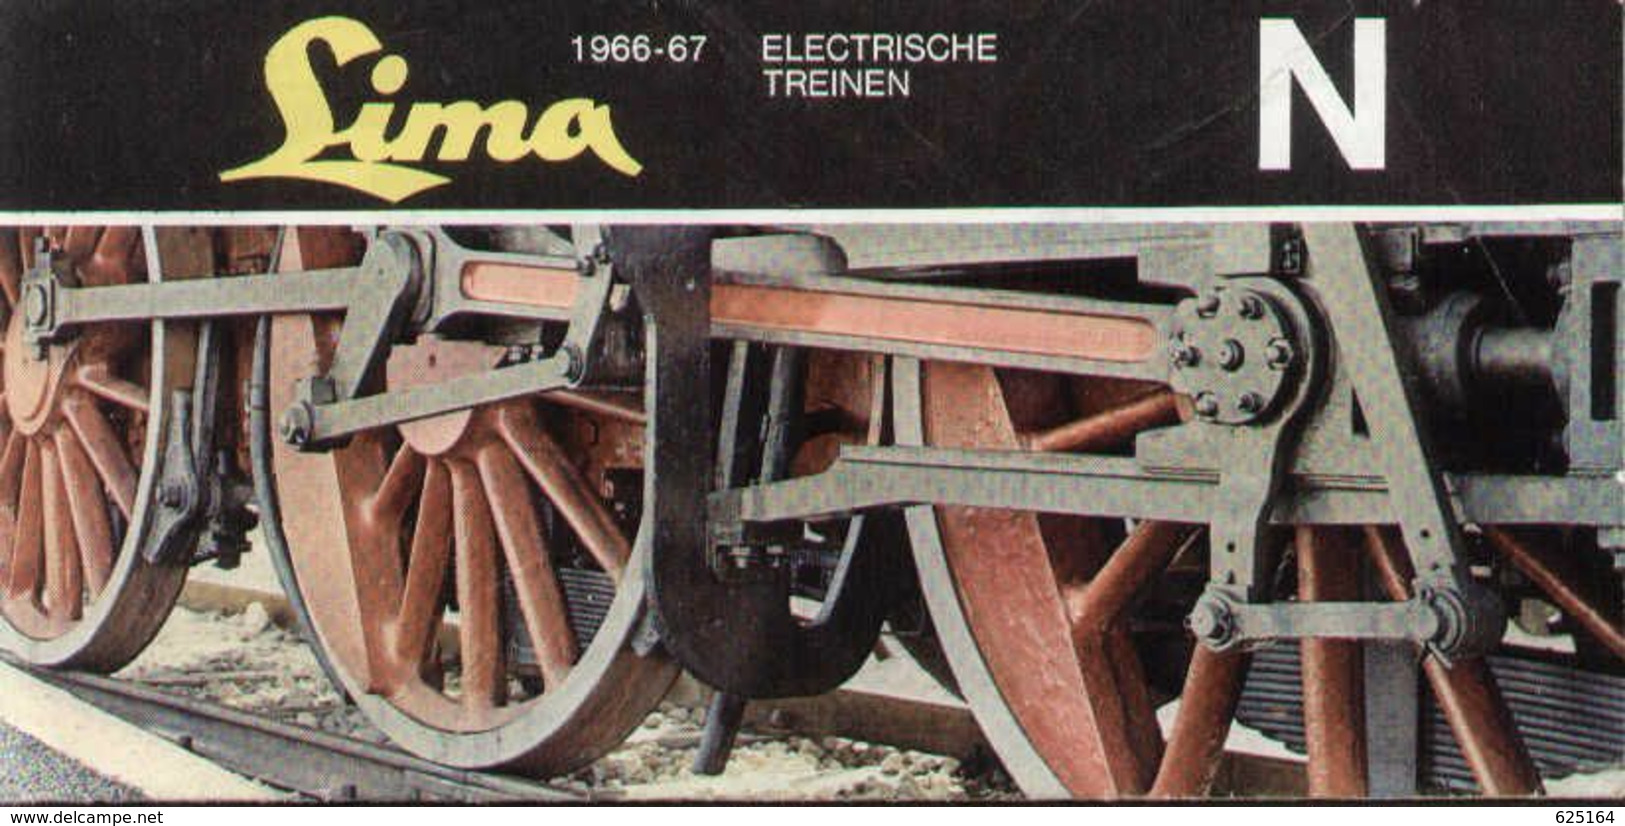 Catalogue LIMA 1966/67 Electrische Treinen N 1/160 - Niederländisch